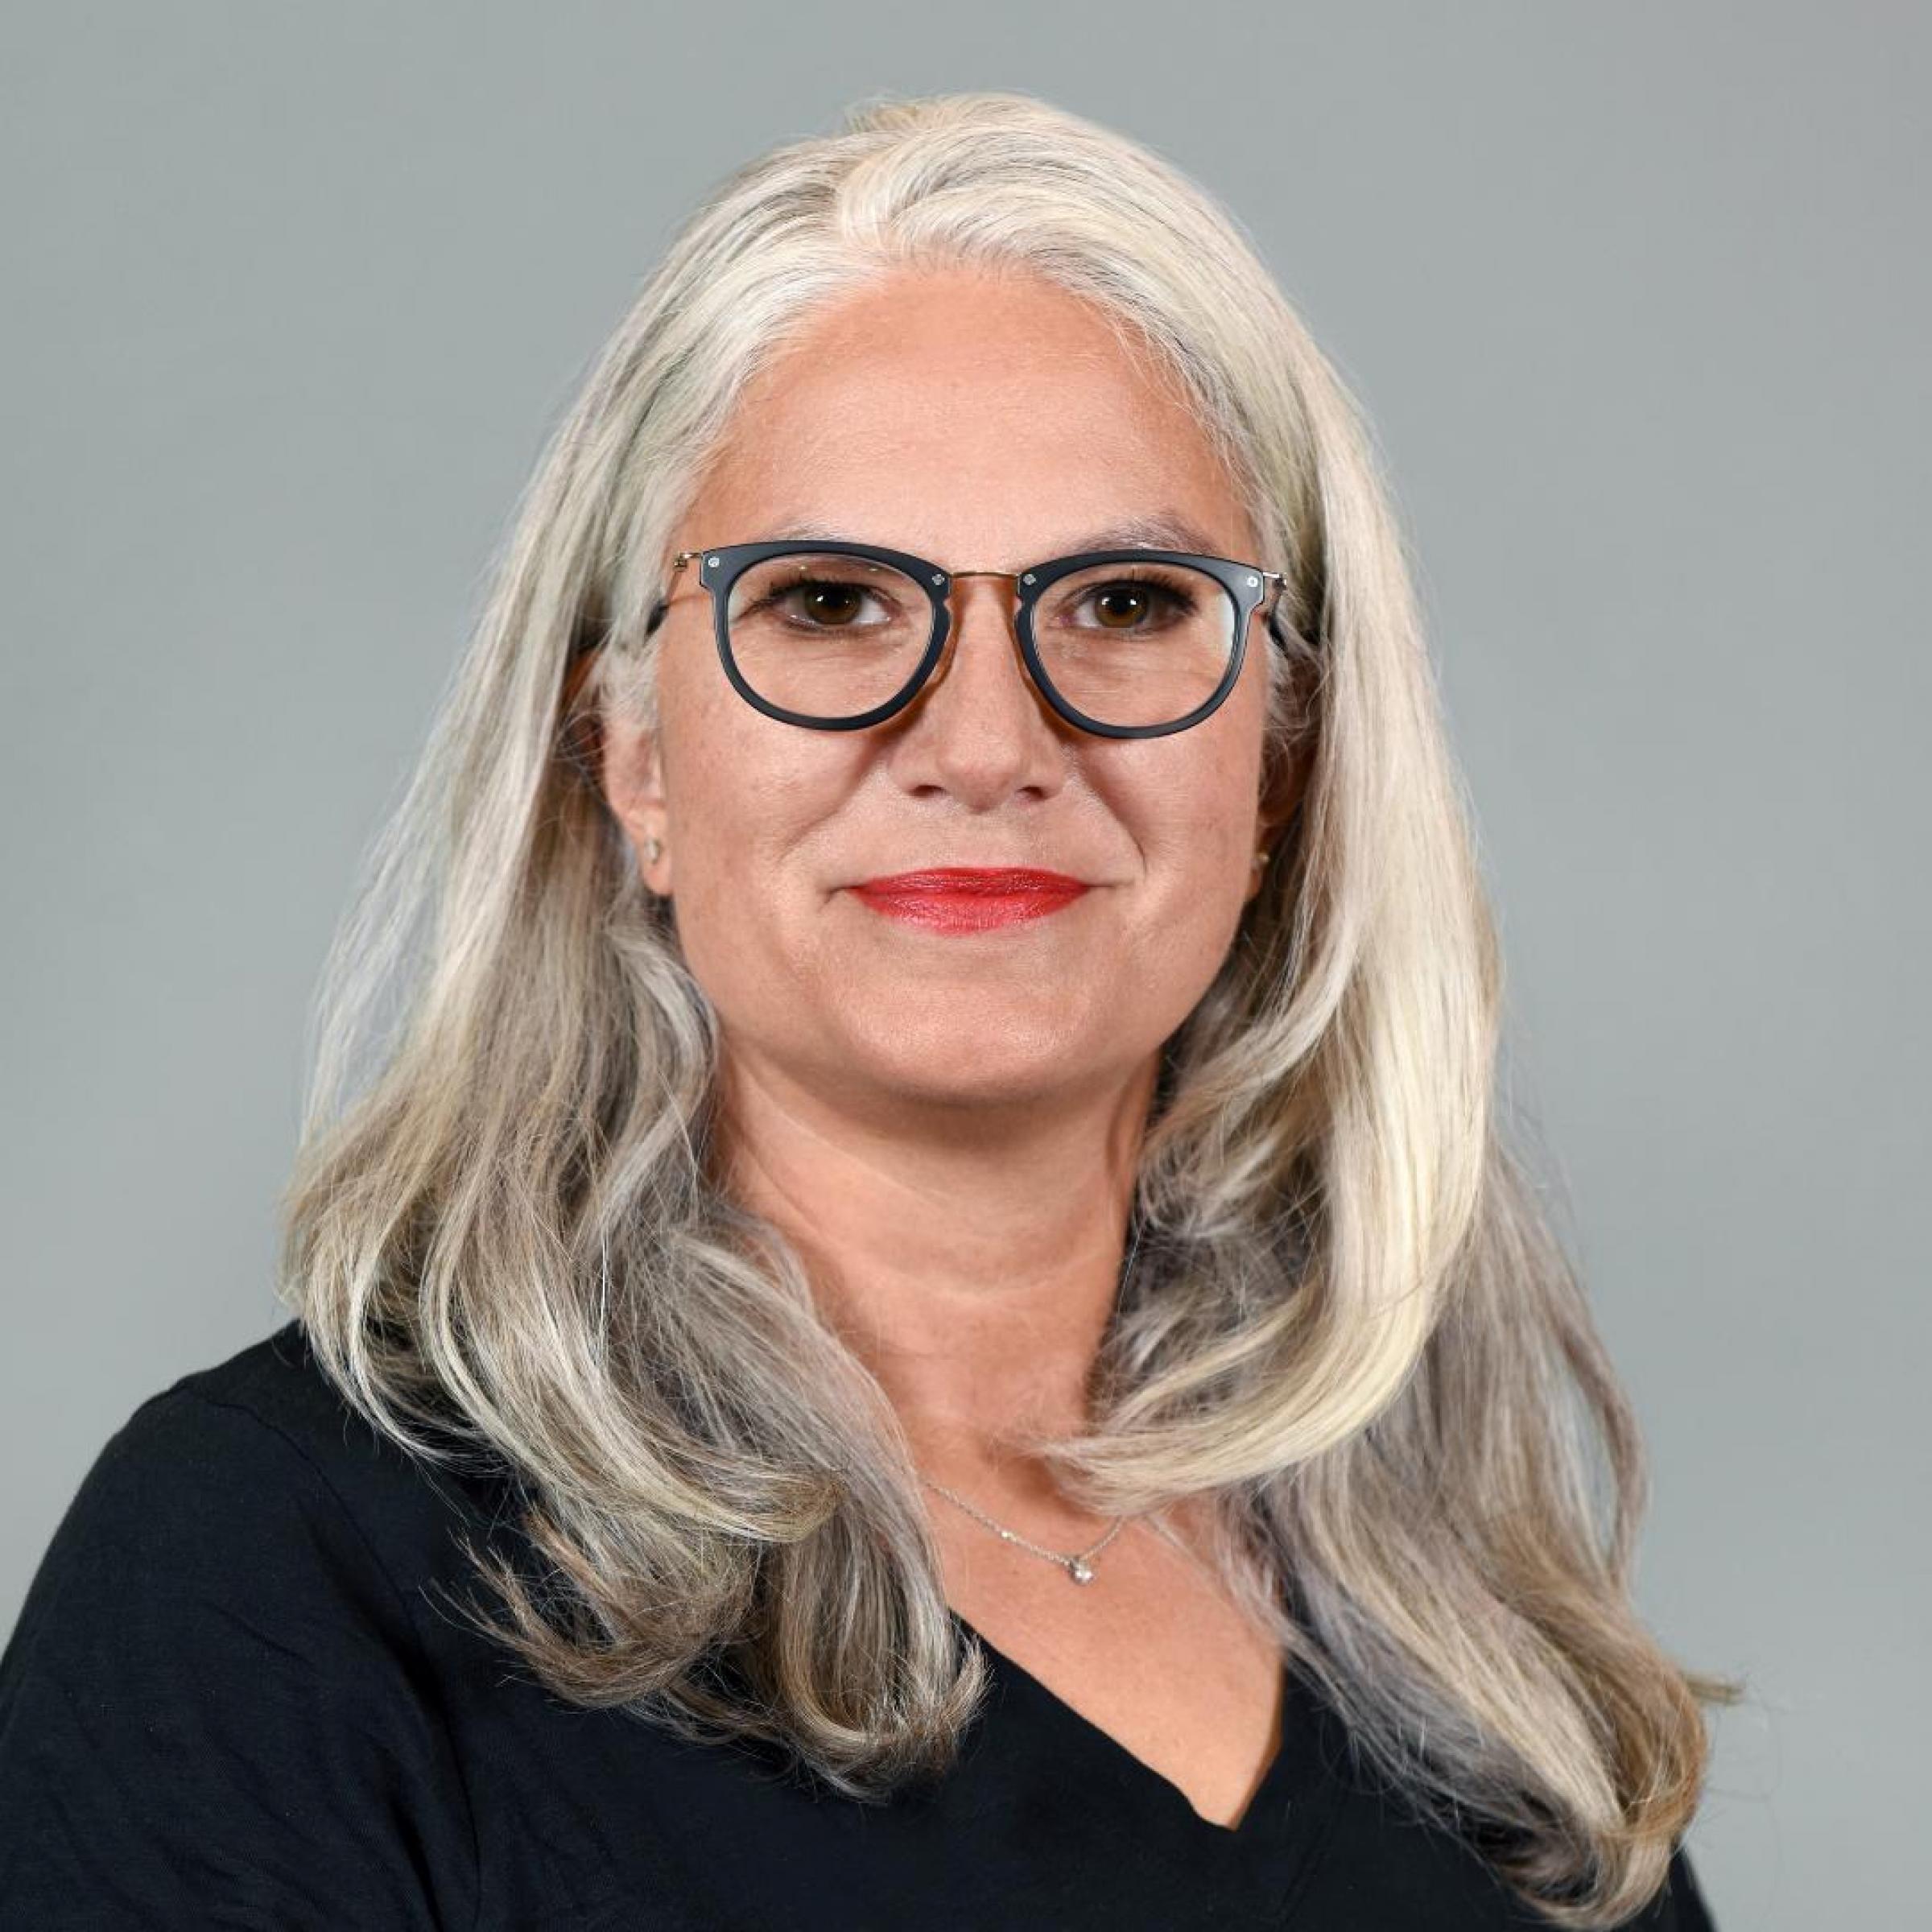 Porträtfoto von weißer Frau mit überschulterlangen grauen Haaren. Sie trägt eine Brille mit schwarzem Gestell und lächelt.